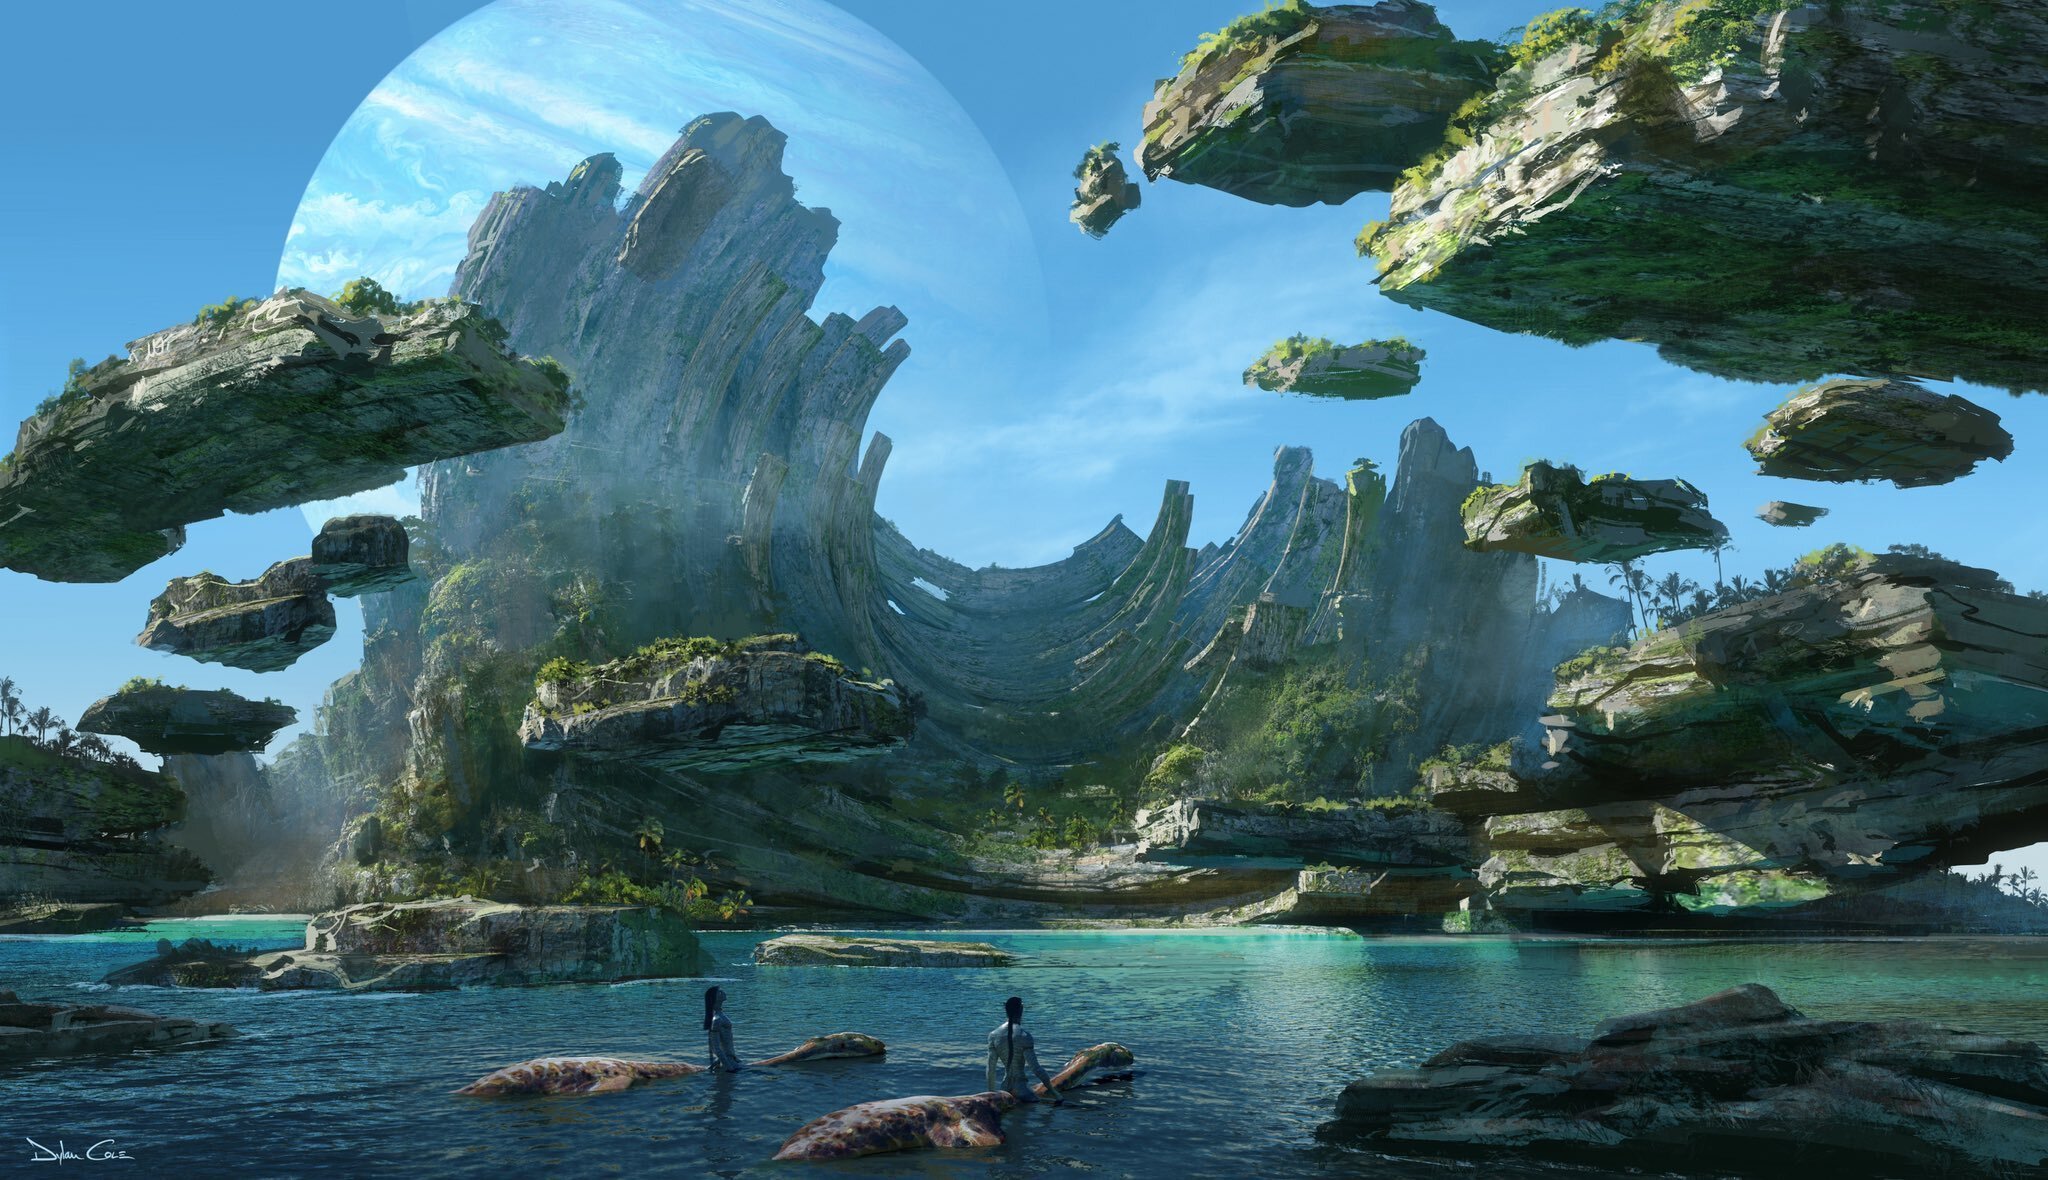 Định dạng IMAX 3D là yếu tố làm nên thành công cho “Avatar 2